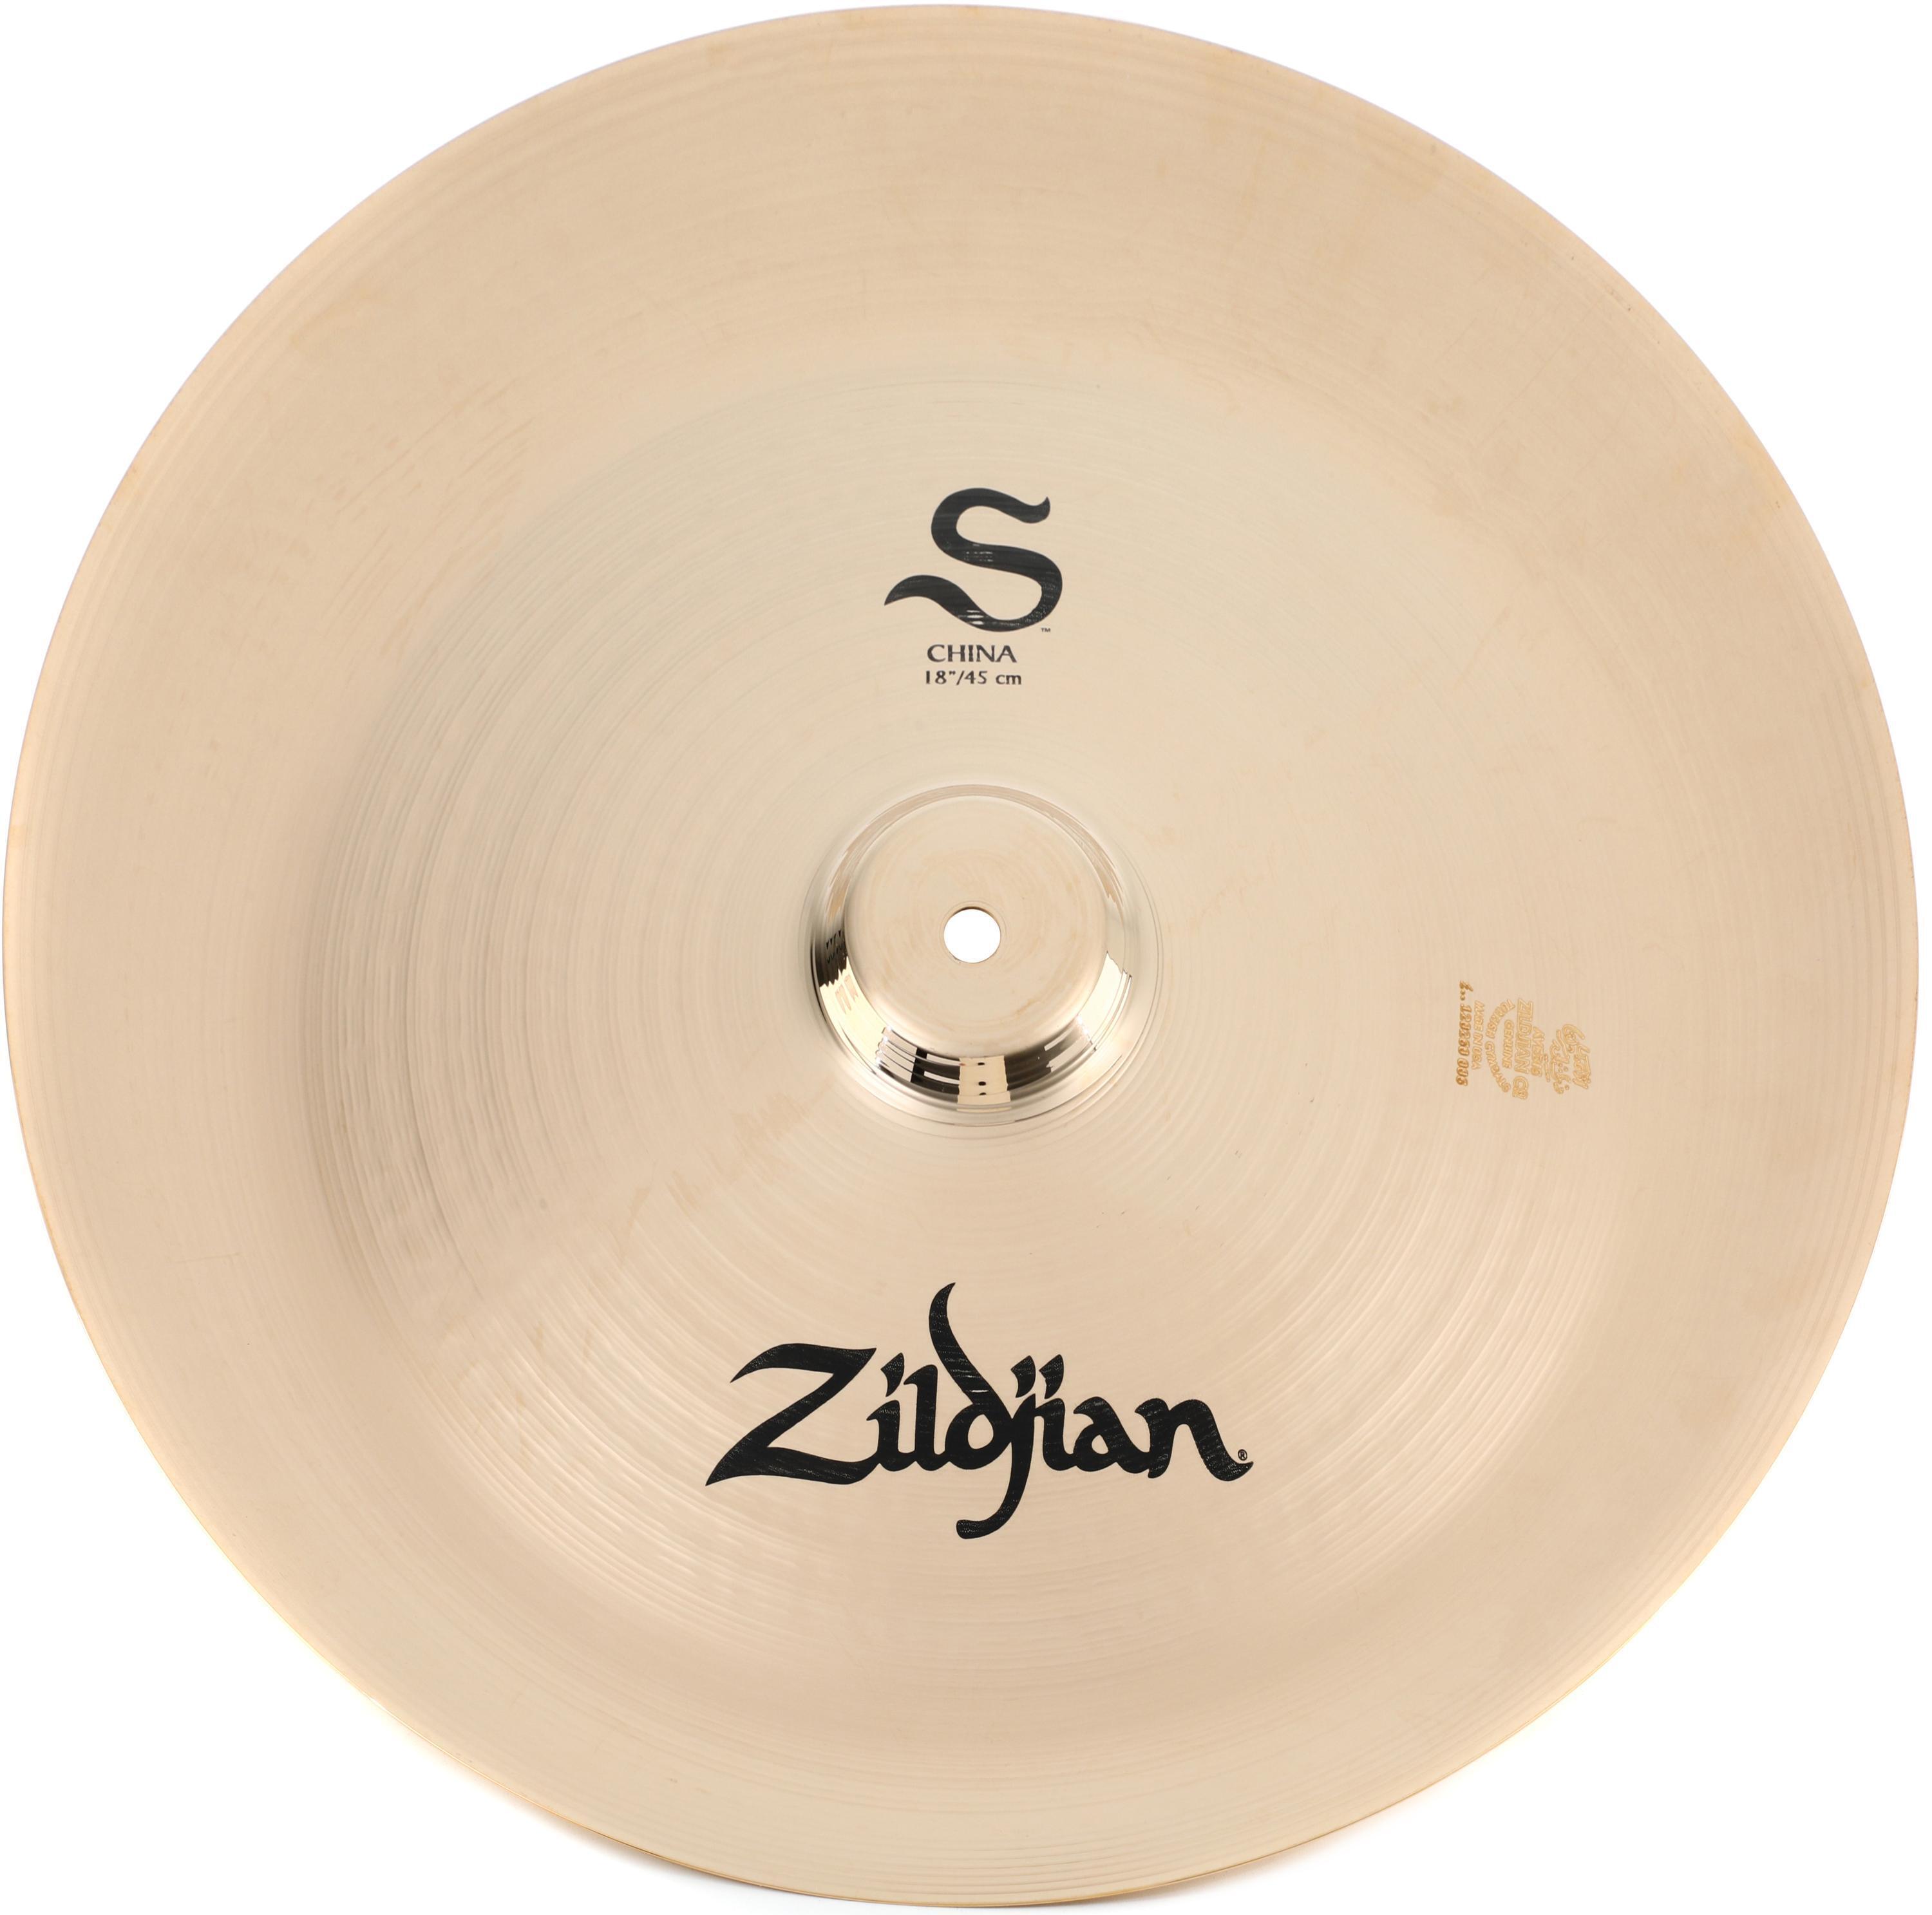 Zildjian 18 inch S Series China Cymbal